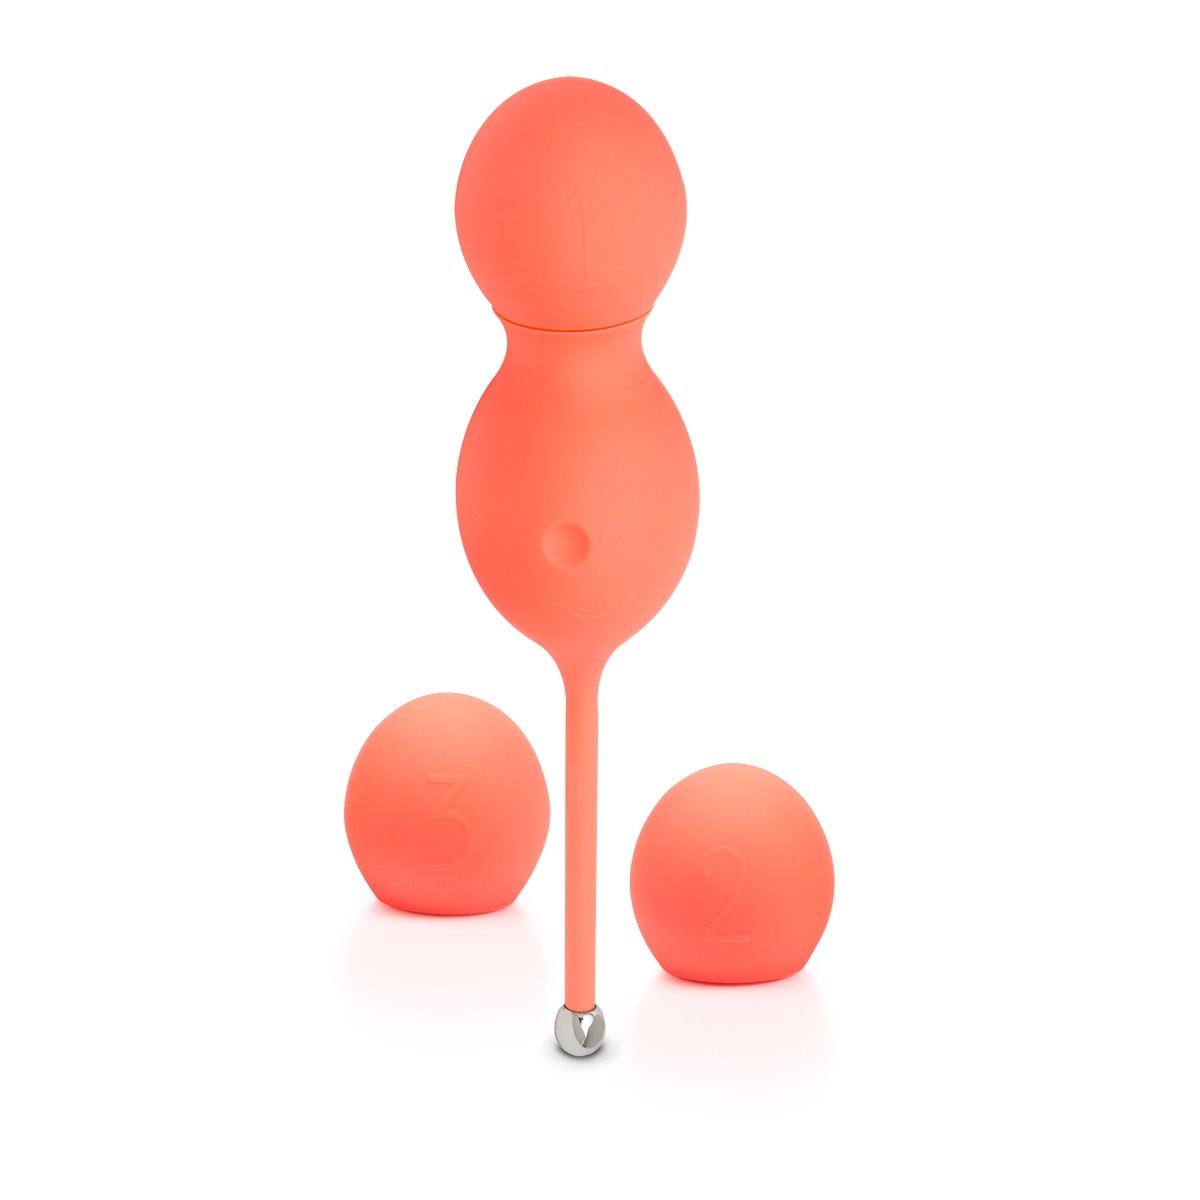 Компания We-Vibe наконец-то выпустила шарики для тренировки интимных мышц. С вибрацией! Основная особенность шариков Bloom – они собираются и разбираются. Игрушка состоит из двух частей: база со шнурочком и съемный шарик, который регулирует общий вес конструкции. Все части игрушки сделаны из мягкого и приятного на ощупь силикона. <br><br>  База, которая со шнурочком, вибрирует. Вторая часть имеет 3 варианта веса: 10, 30 и 45 граммов. Начинают всегда с самого маленького веса. И постепенно его увеличивают. Так мышцы тазового дна тренируются, и вы сможете получать больше удовольствия во время секса. Оргазмы становятся ярче, мышцы – крепче. <br><br>  Вагинальные шарики Bloom супер-современные: кроме того, что они вибрируют, управление ими осуществляется с помощью приложения на смартфоне. Установите на свой гаджет бесплатное приложение We-Connect, и вы сможете легко управлять игрушкой и даже создавать свои собственные ритмы вибрации.   Рабочая длина - 9 см.<br> Вес вибрирующей базы - 35 гр.<br> Веса для смены - 10, 30 и 45 гр.<br> Время зарядки - 1,5 часа.<br> Время работы - до 1,5 часов.